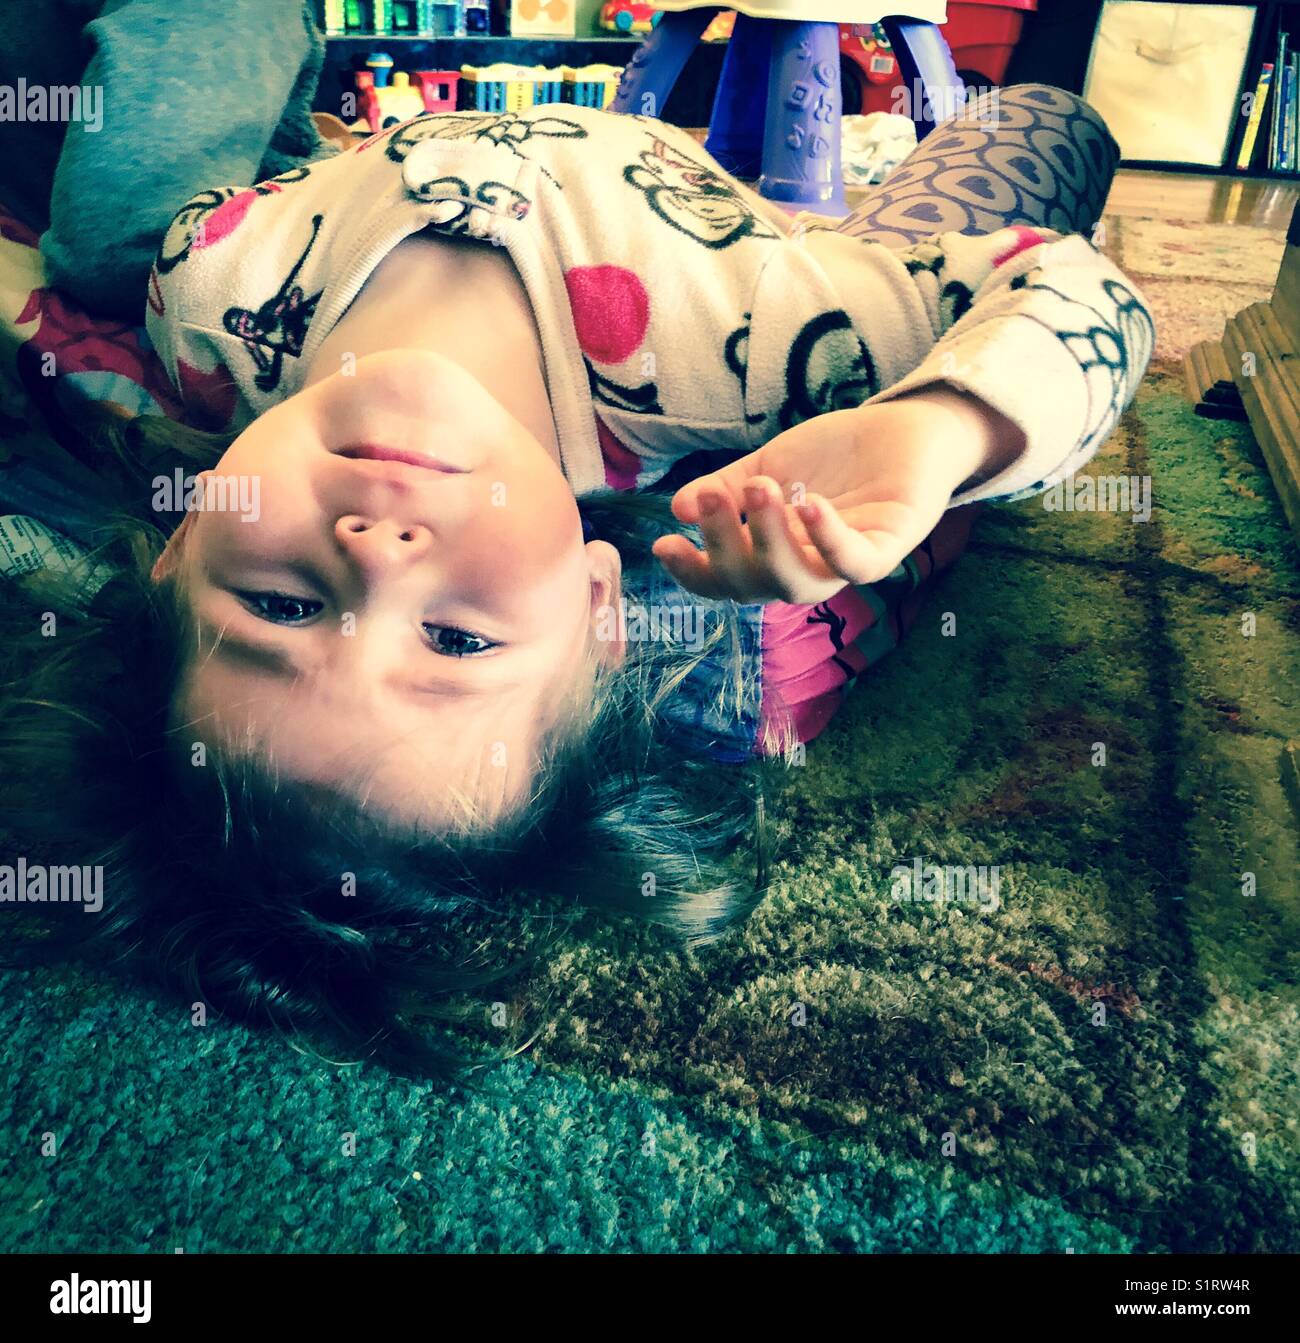 Petite fille posée sur le sol, regardant à l'envers à l'appareil photo avec des yeux teary Banque D'Images